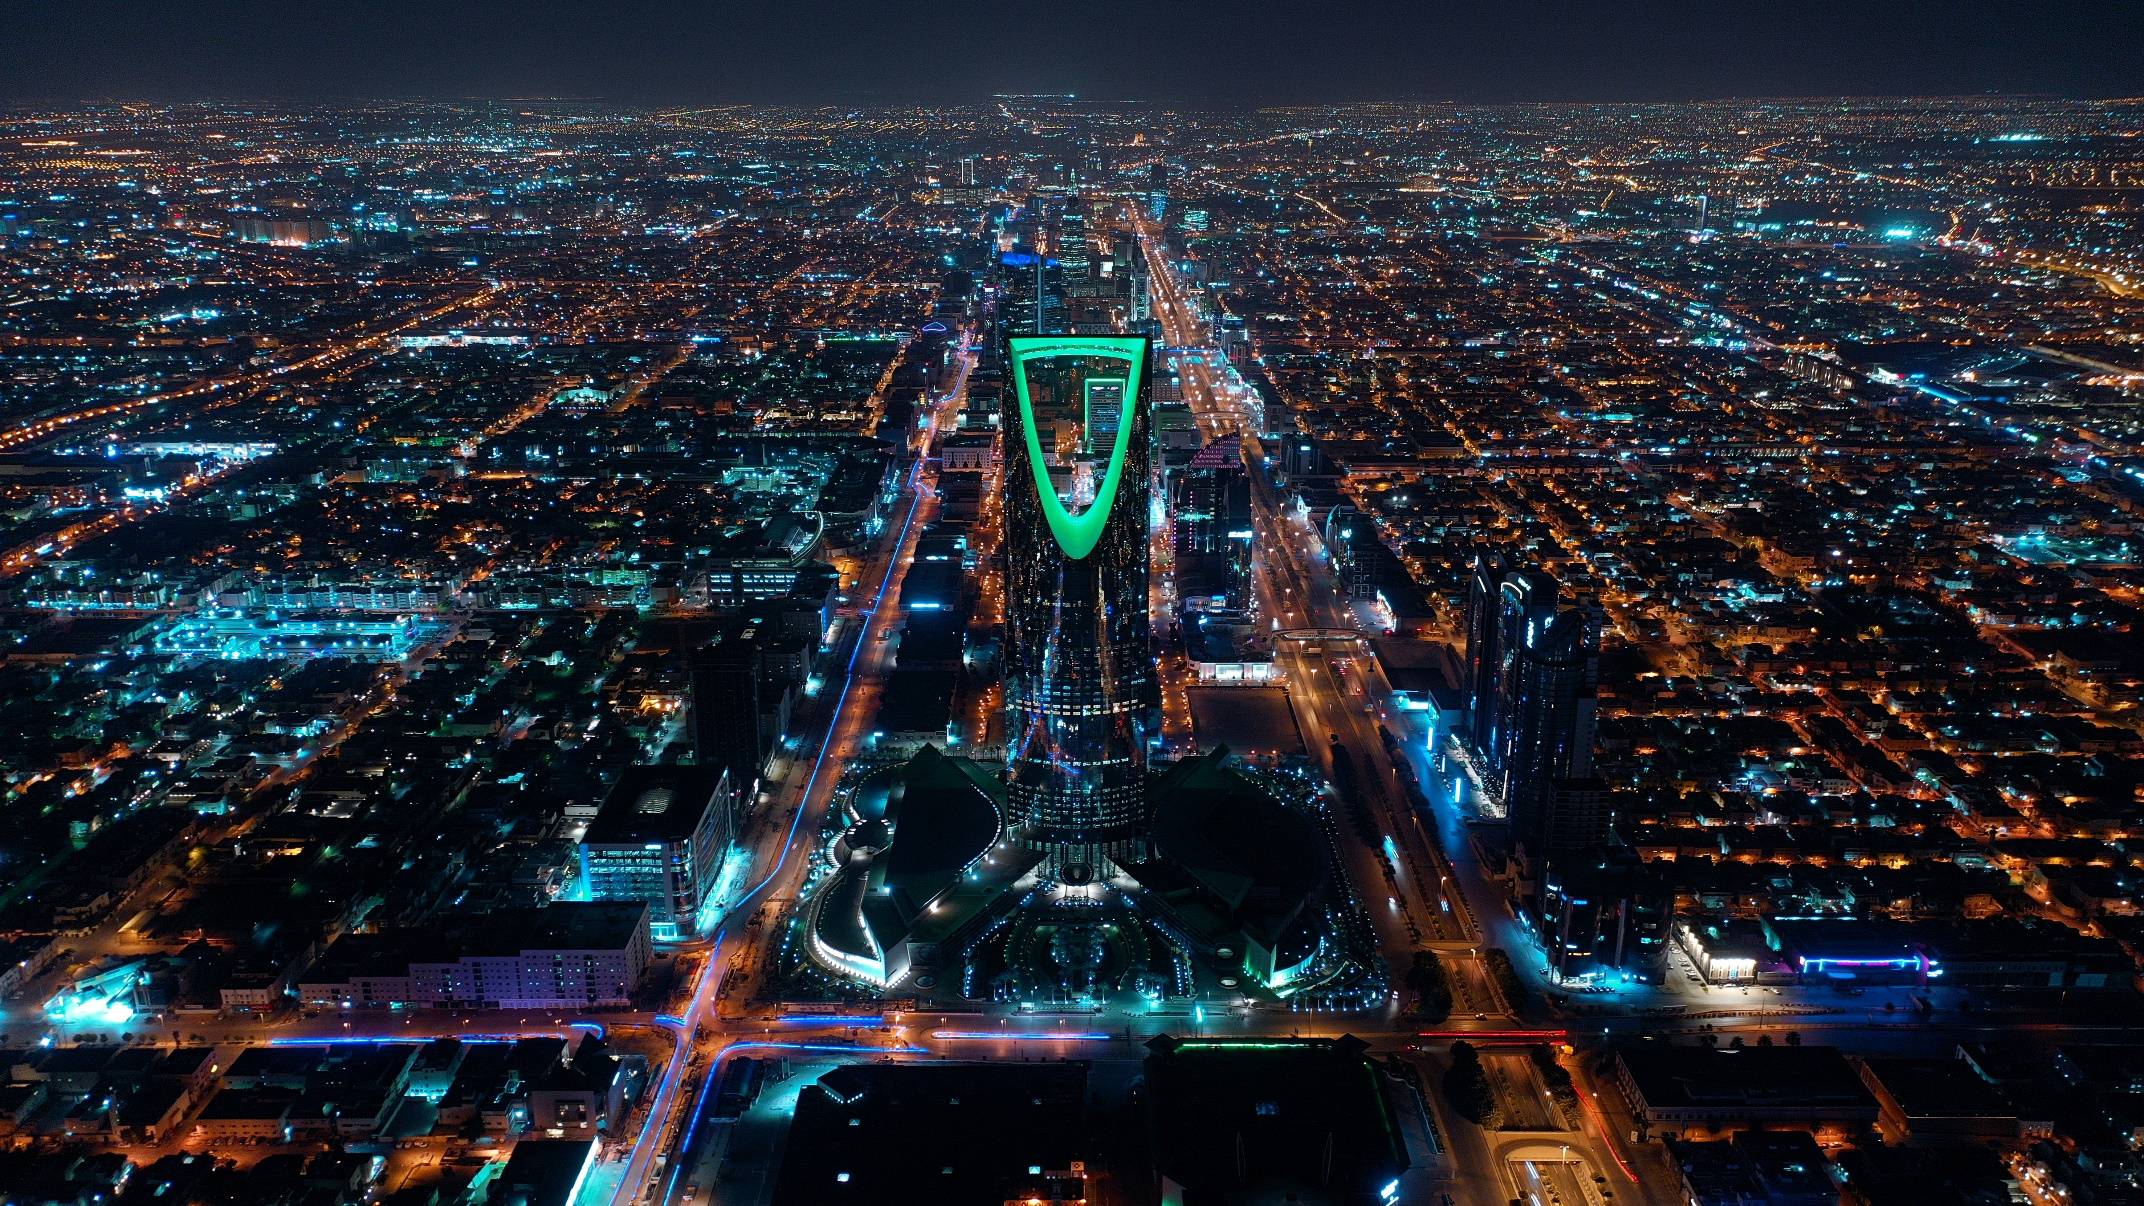 沙特利雅得将主办 2030 年世博会,揭开 变革时代之序幕